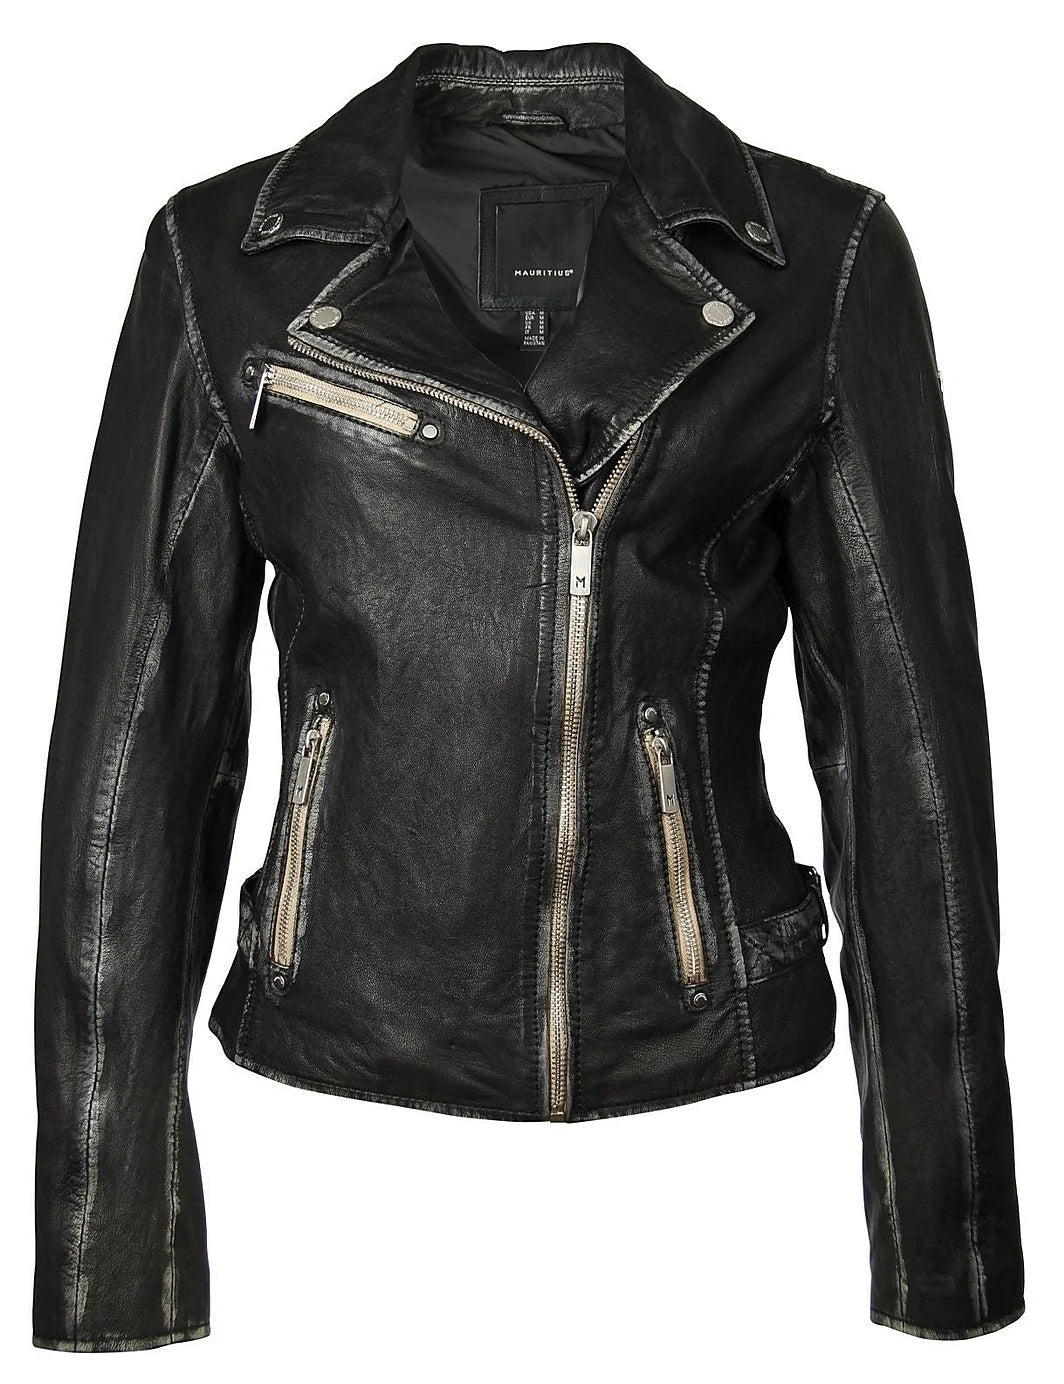 Sofia RF Leather Jacket - Mauritius